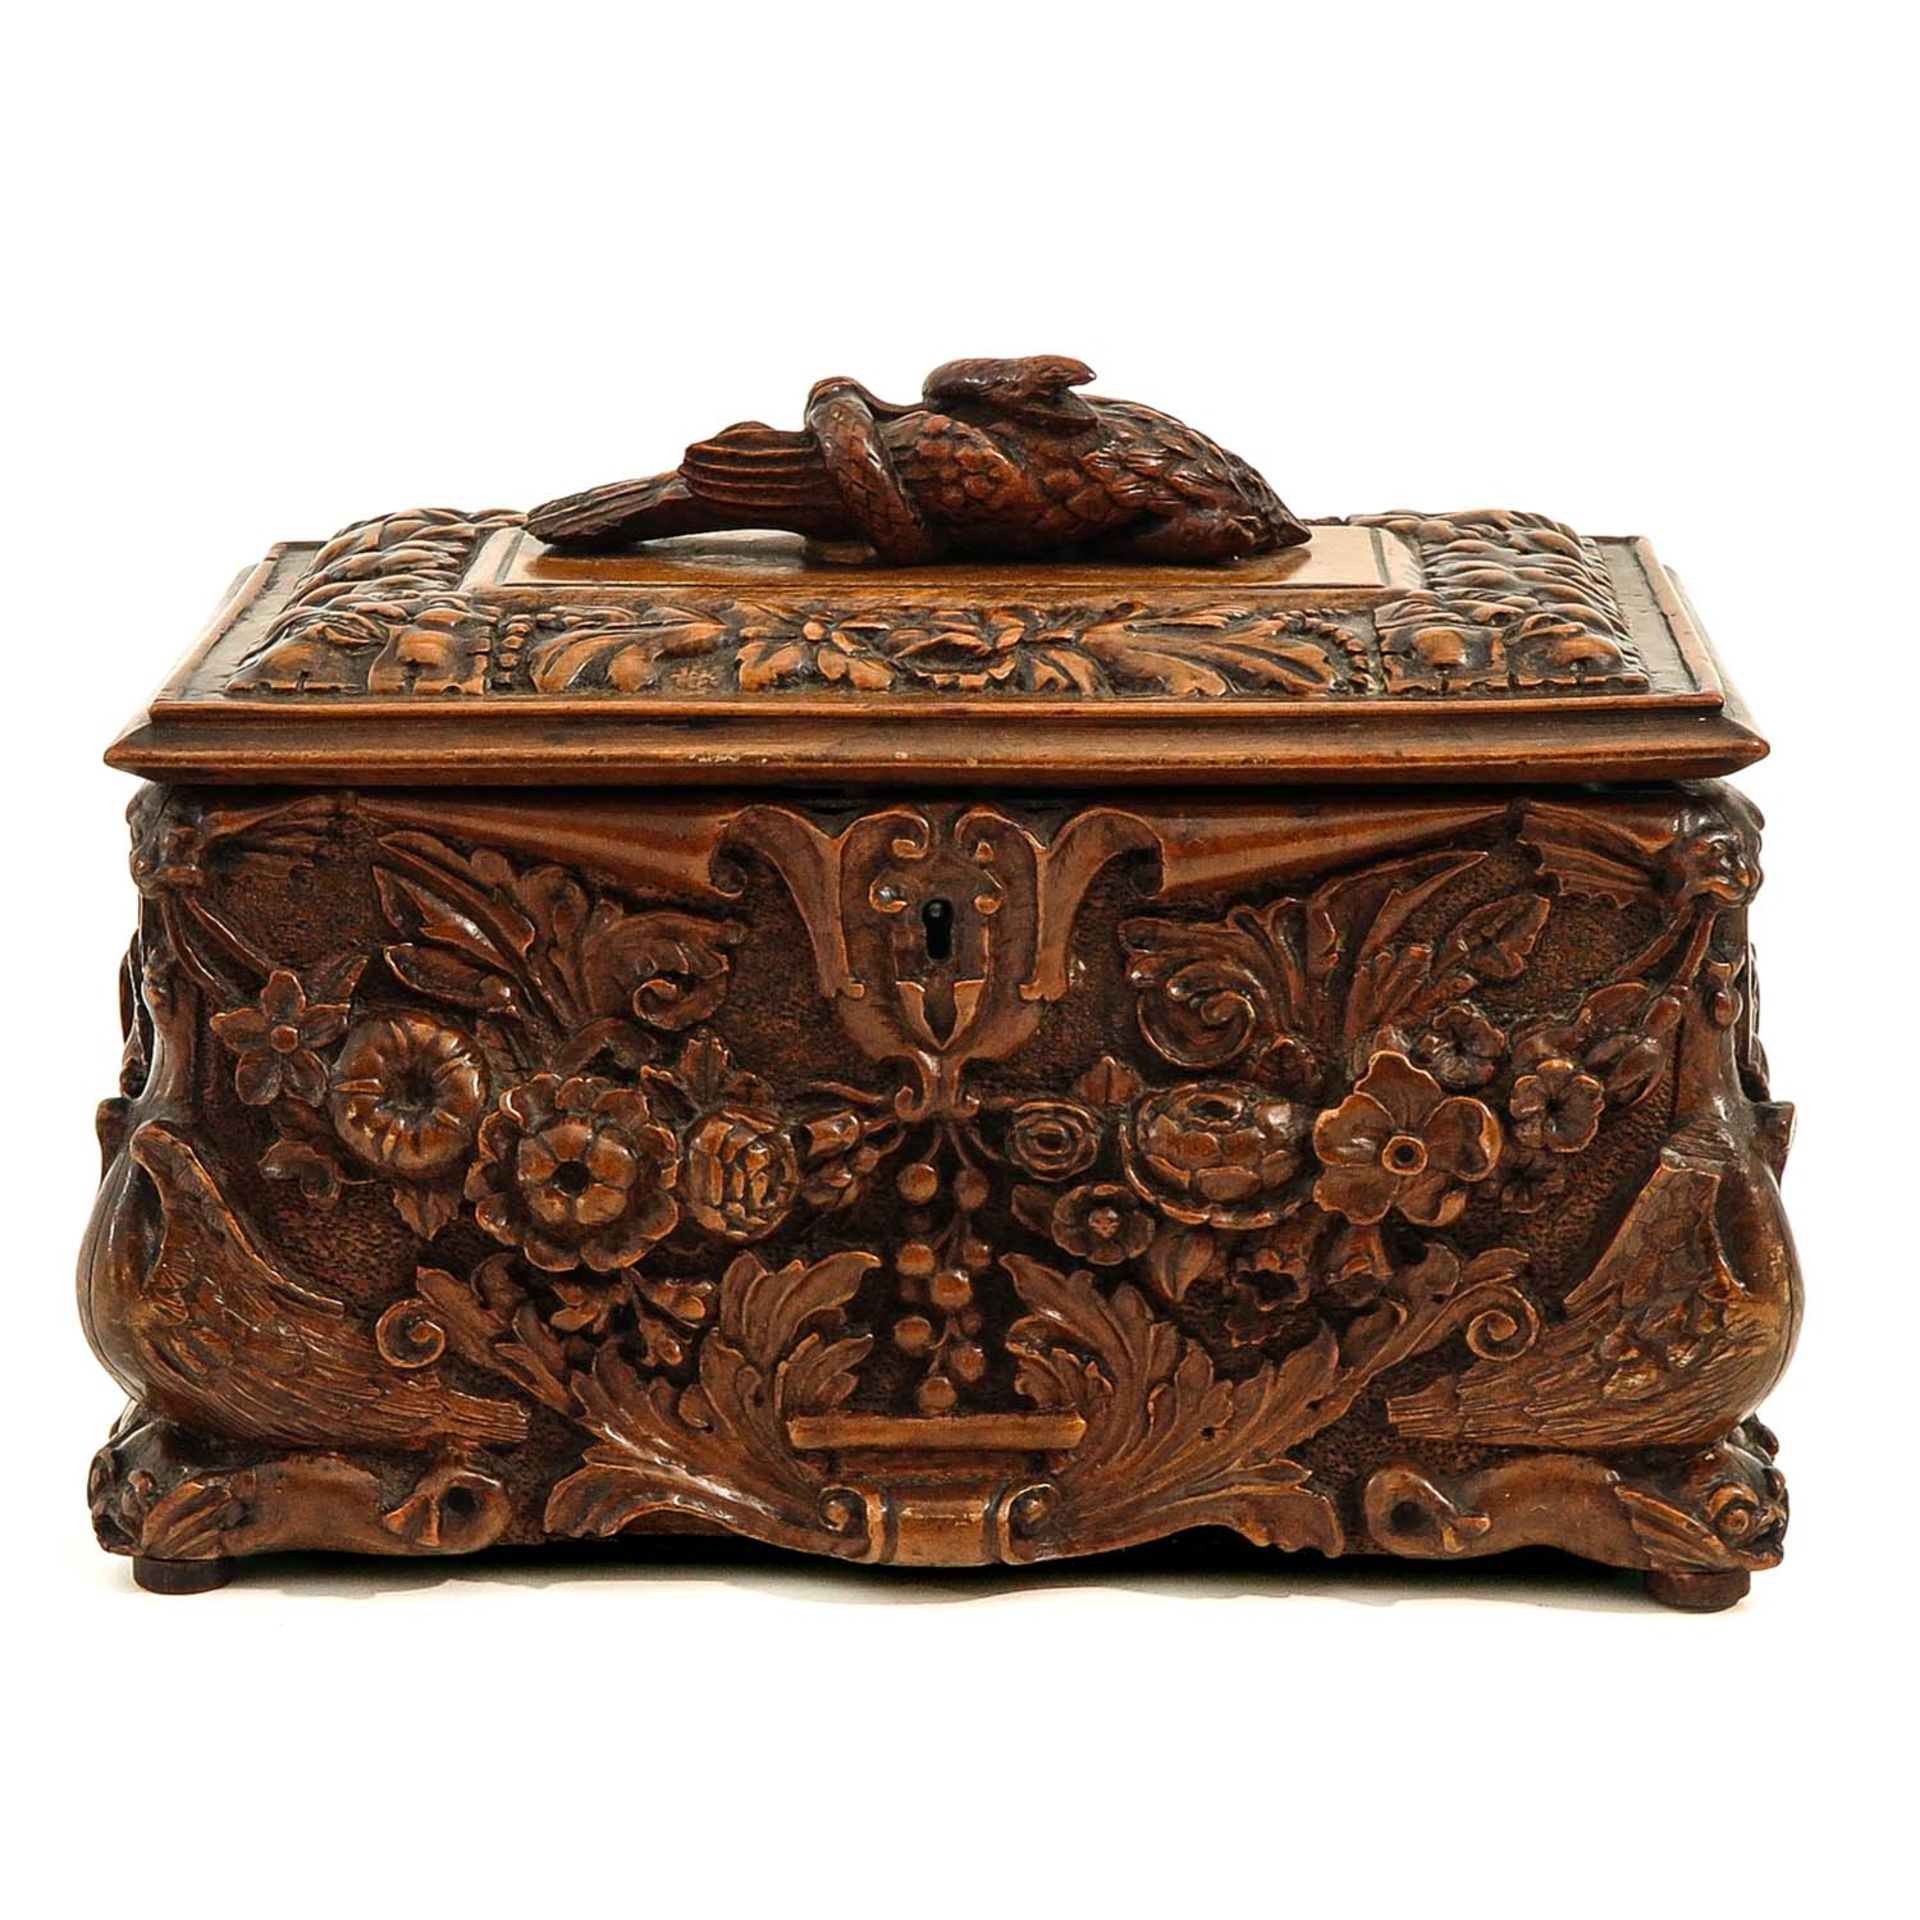 A 19th Century Tea Box